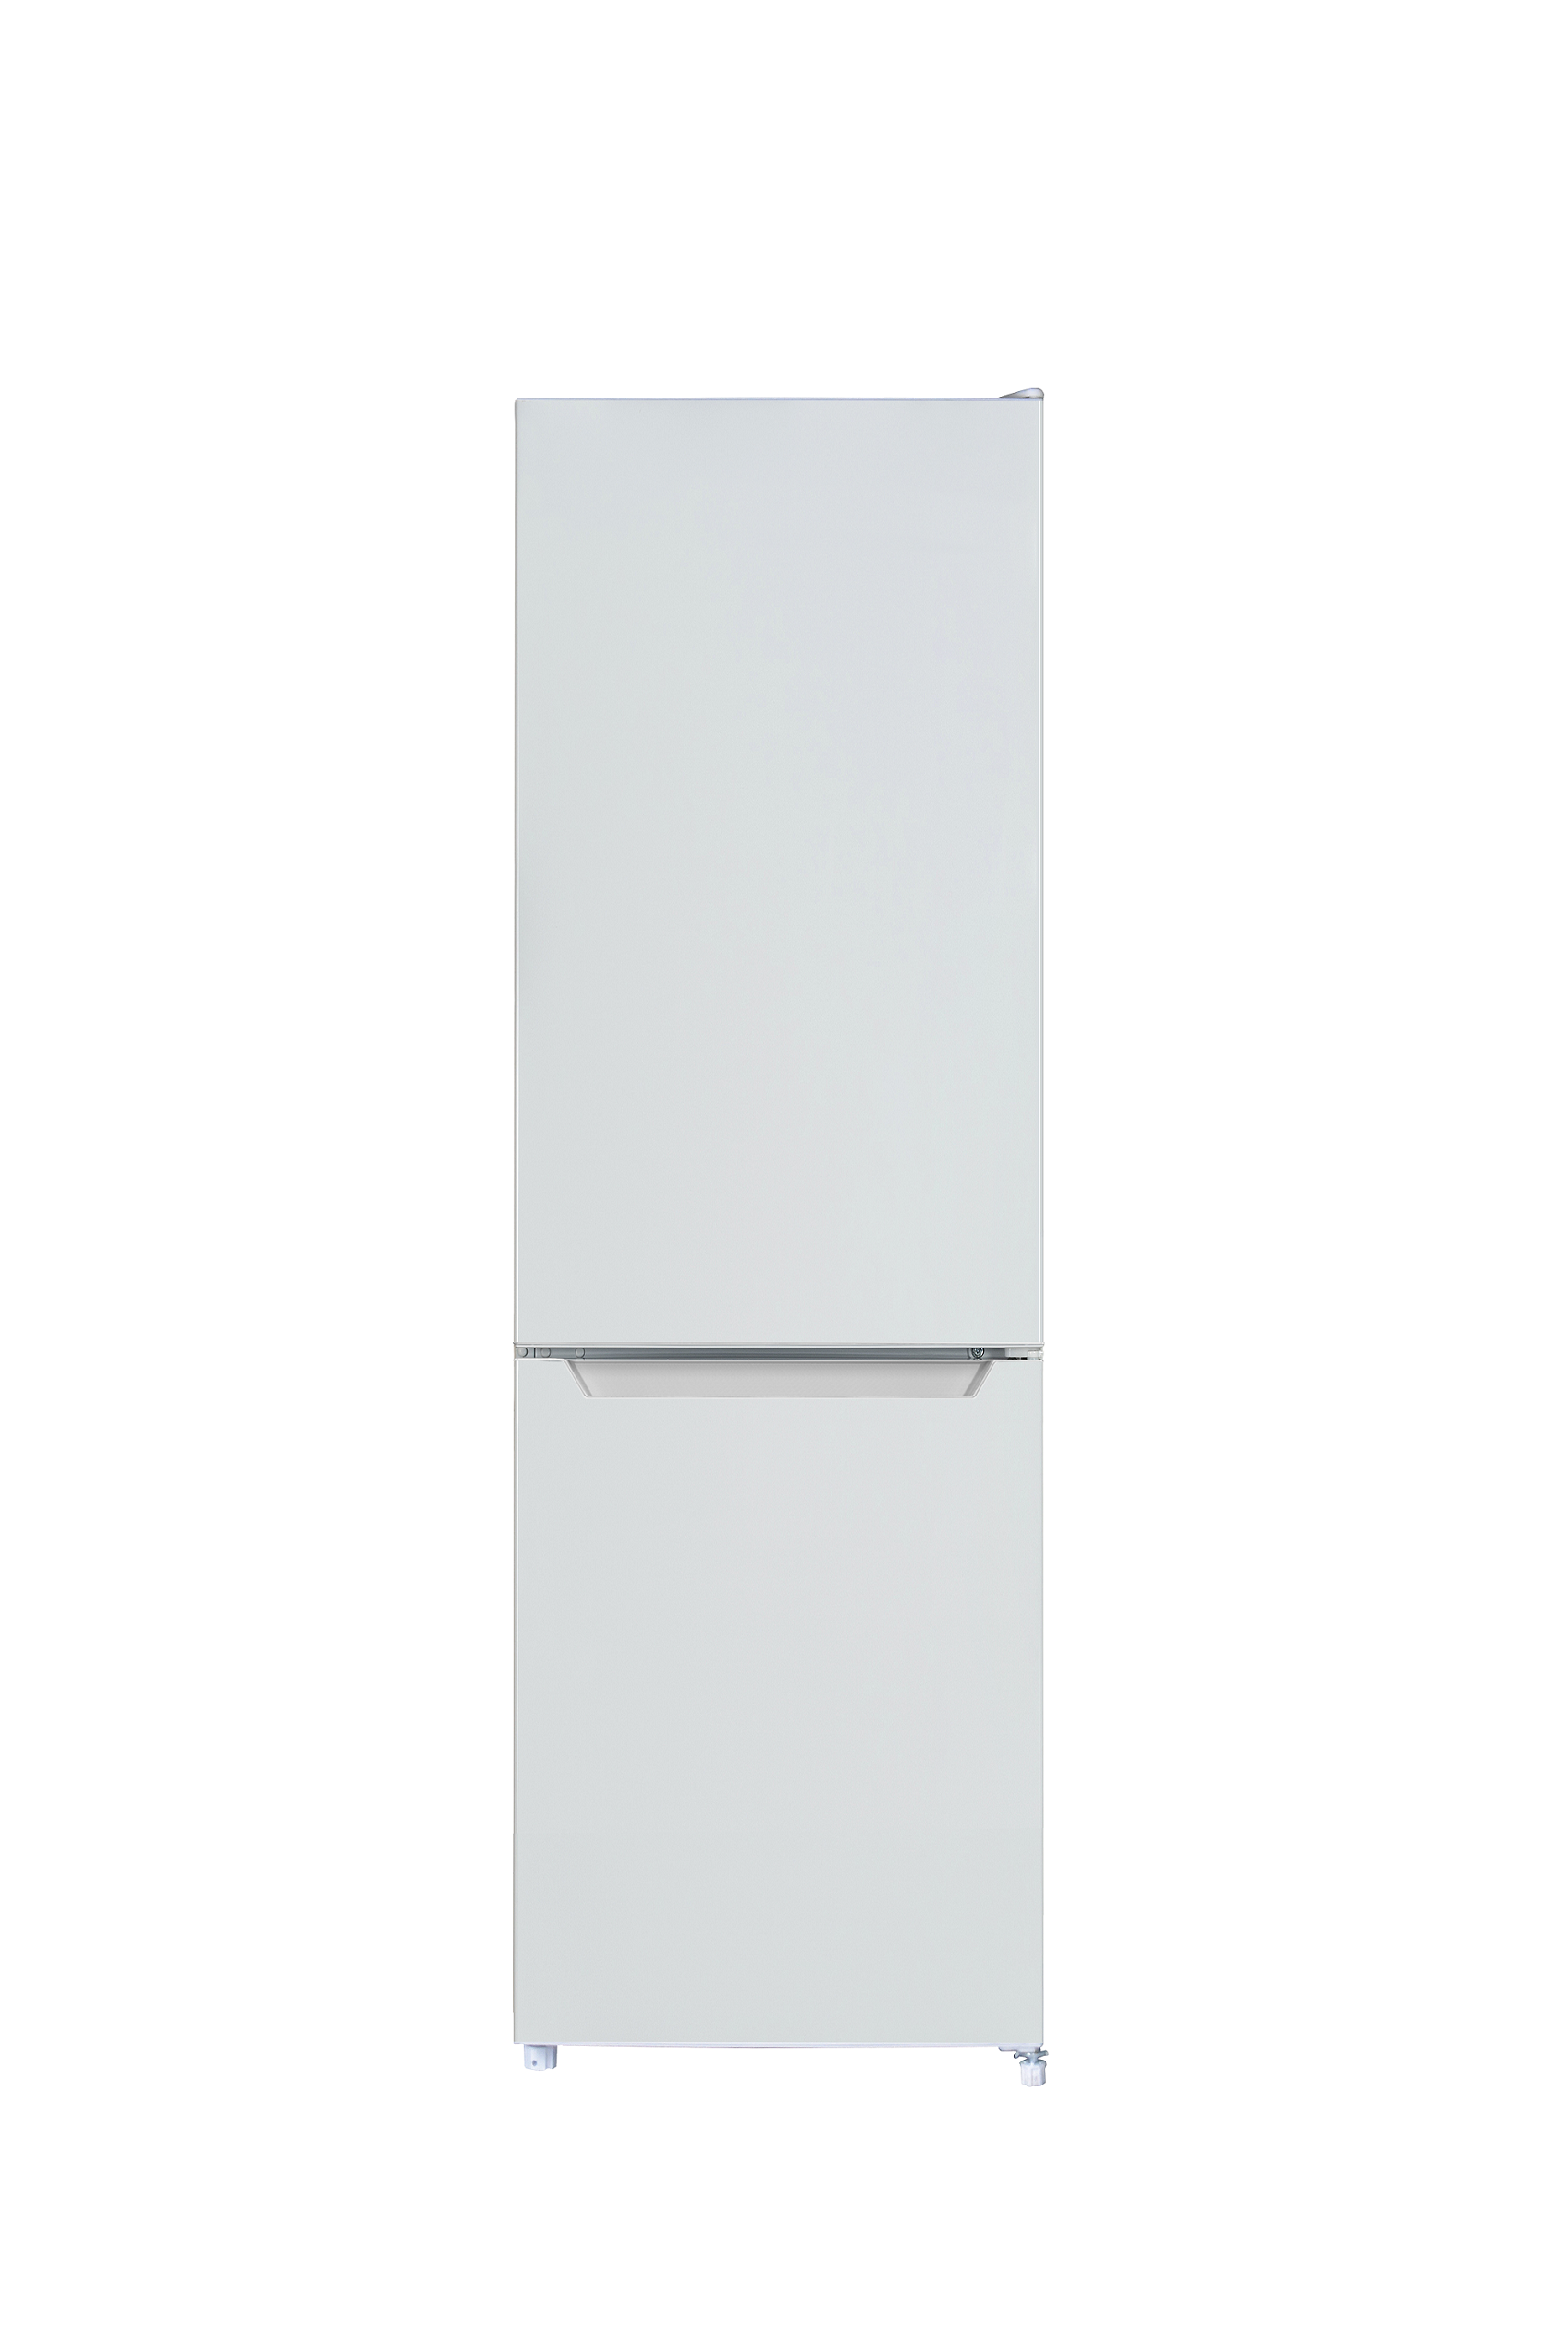 Kühlschrank Kühl Gefrierkombination Standgerät freistehend 144 cm weiß Respekta